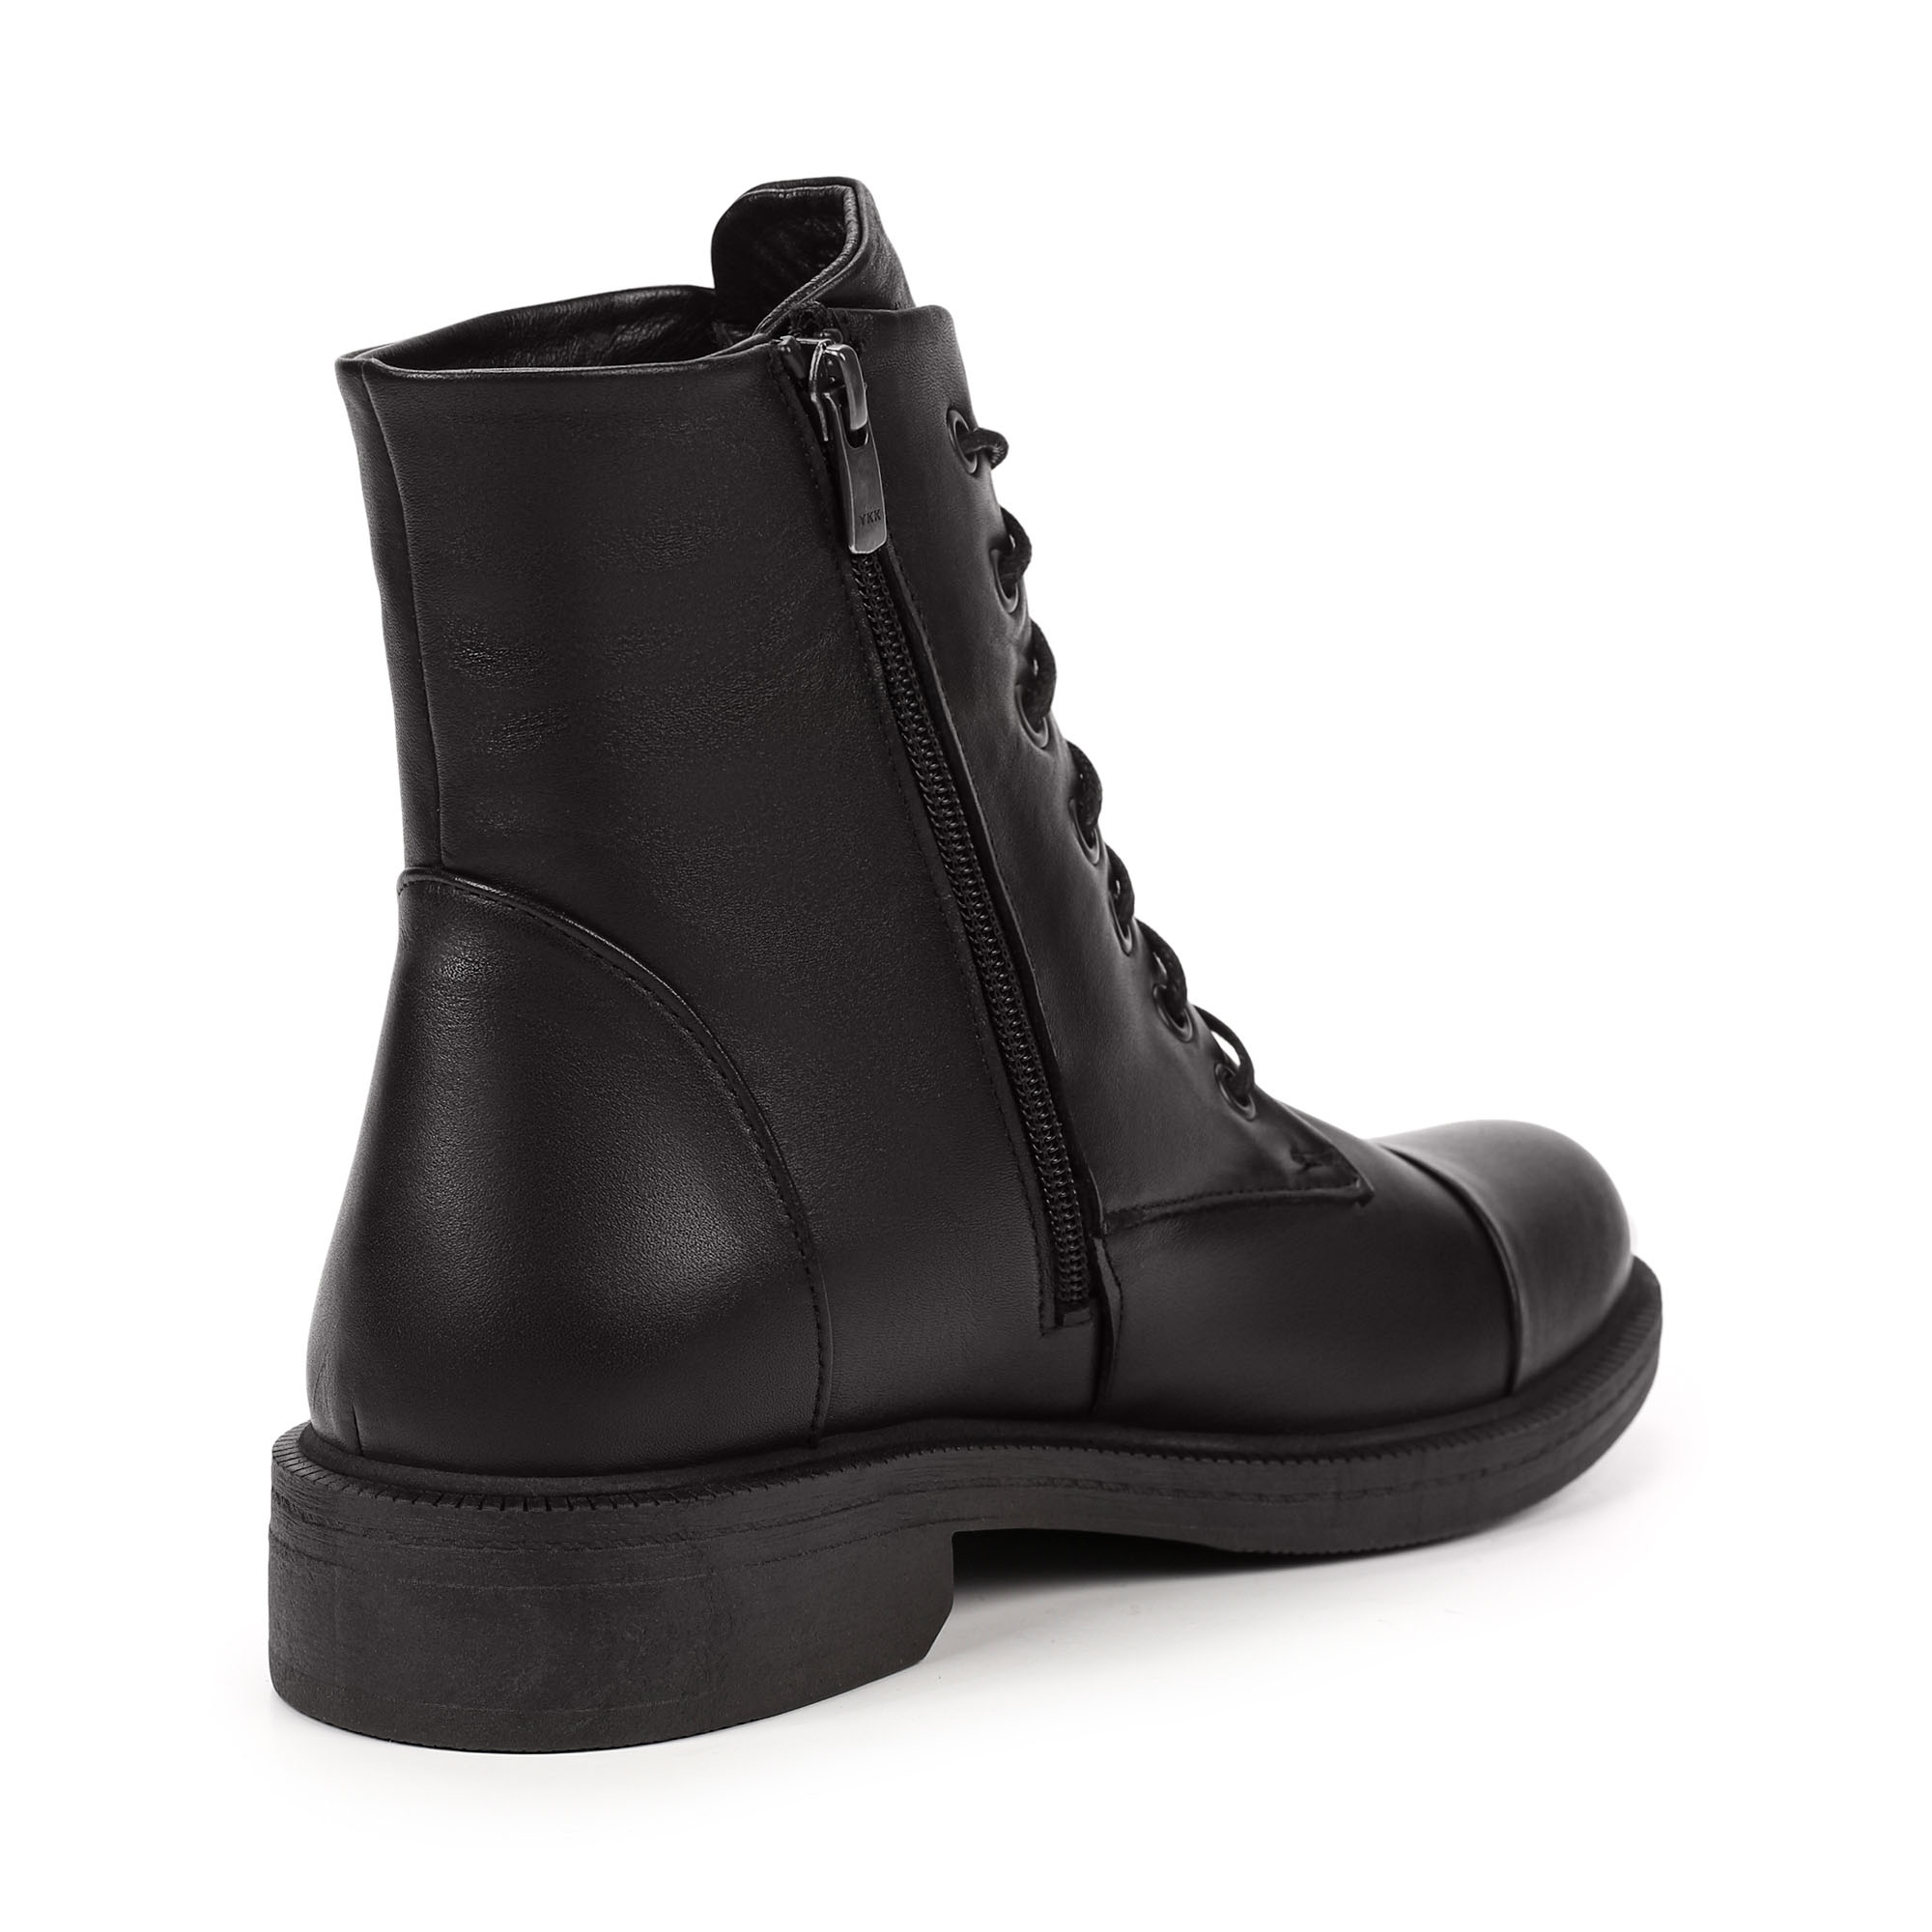 Ботинки Thomas Munz 539-010A-5102, цвет черный, размер 38 - фото 3